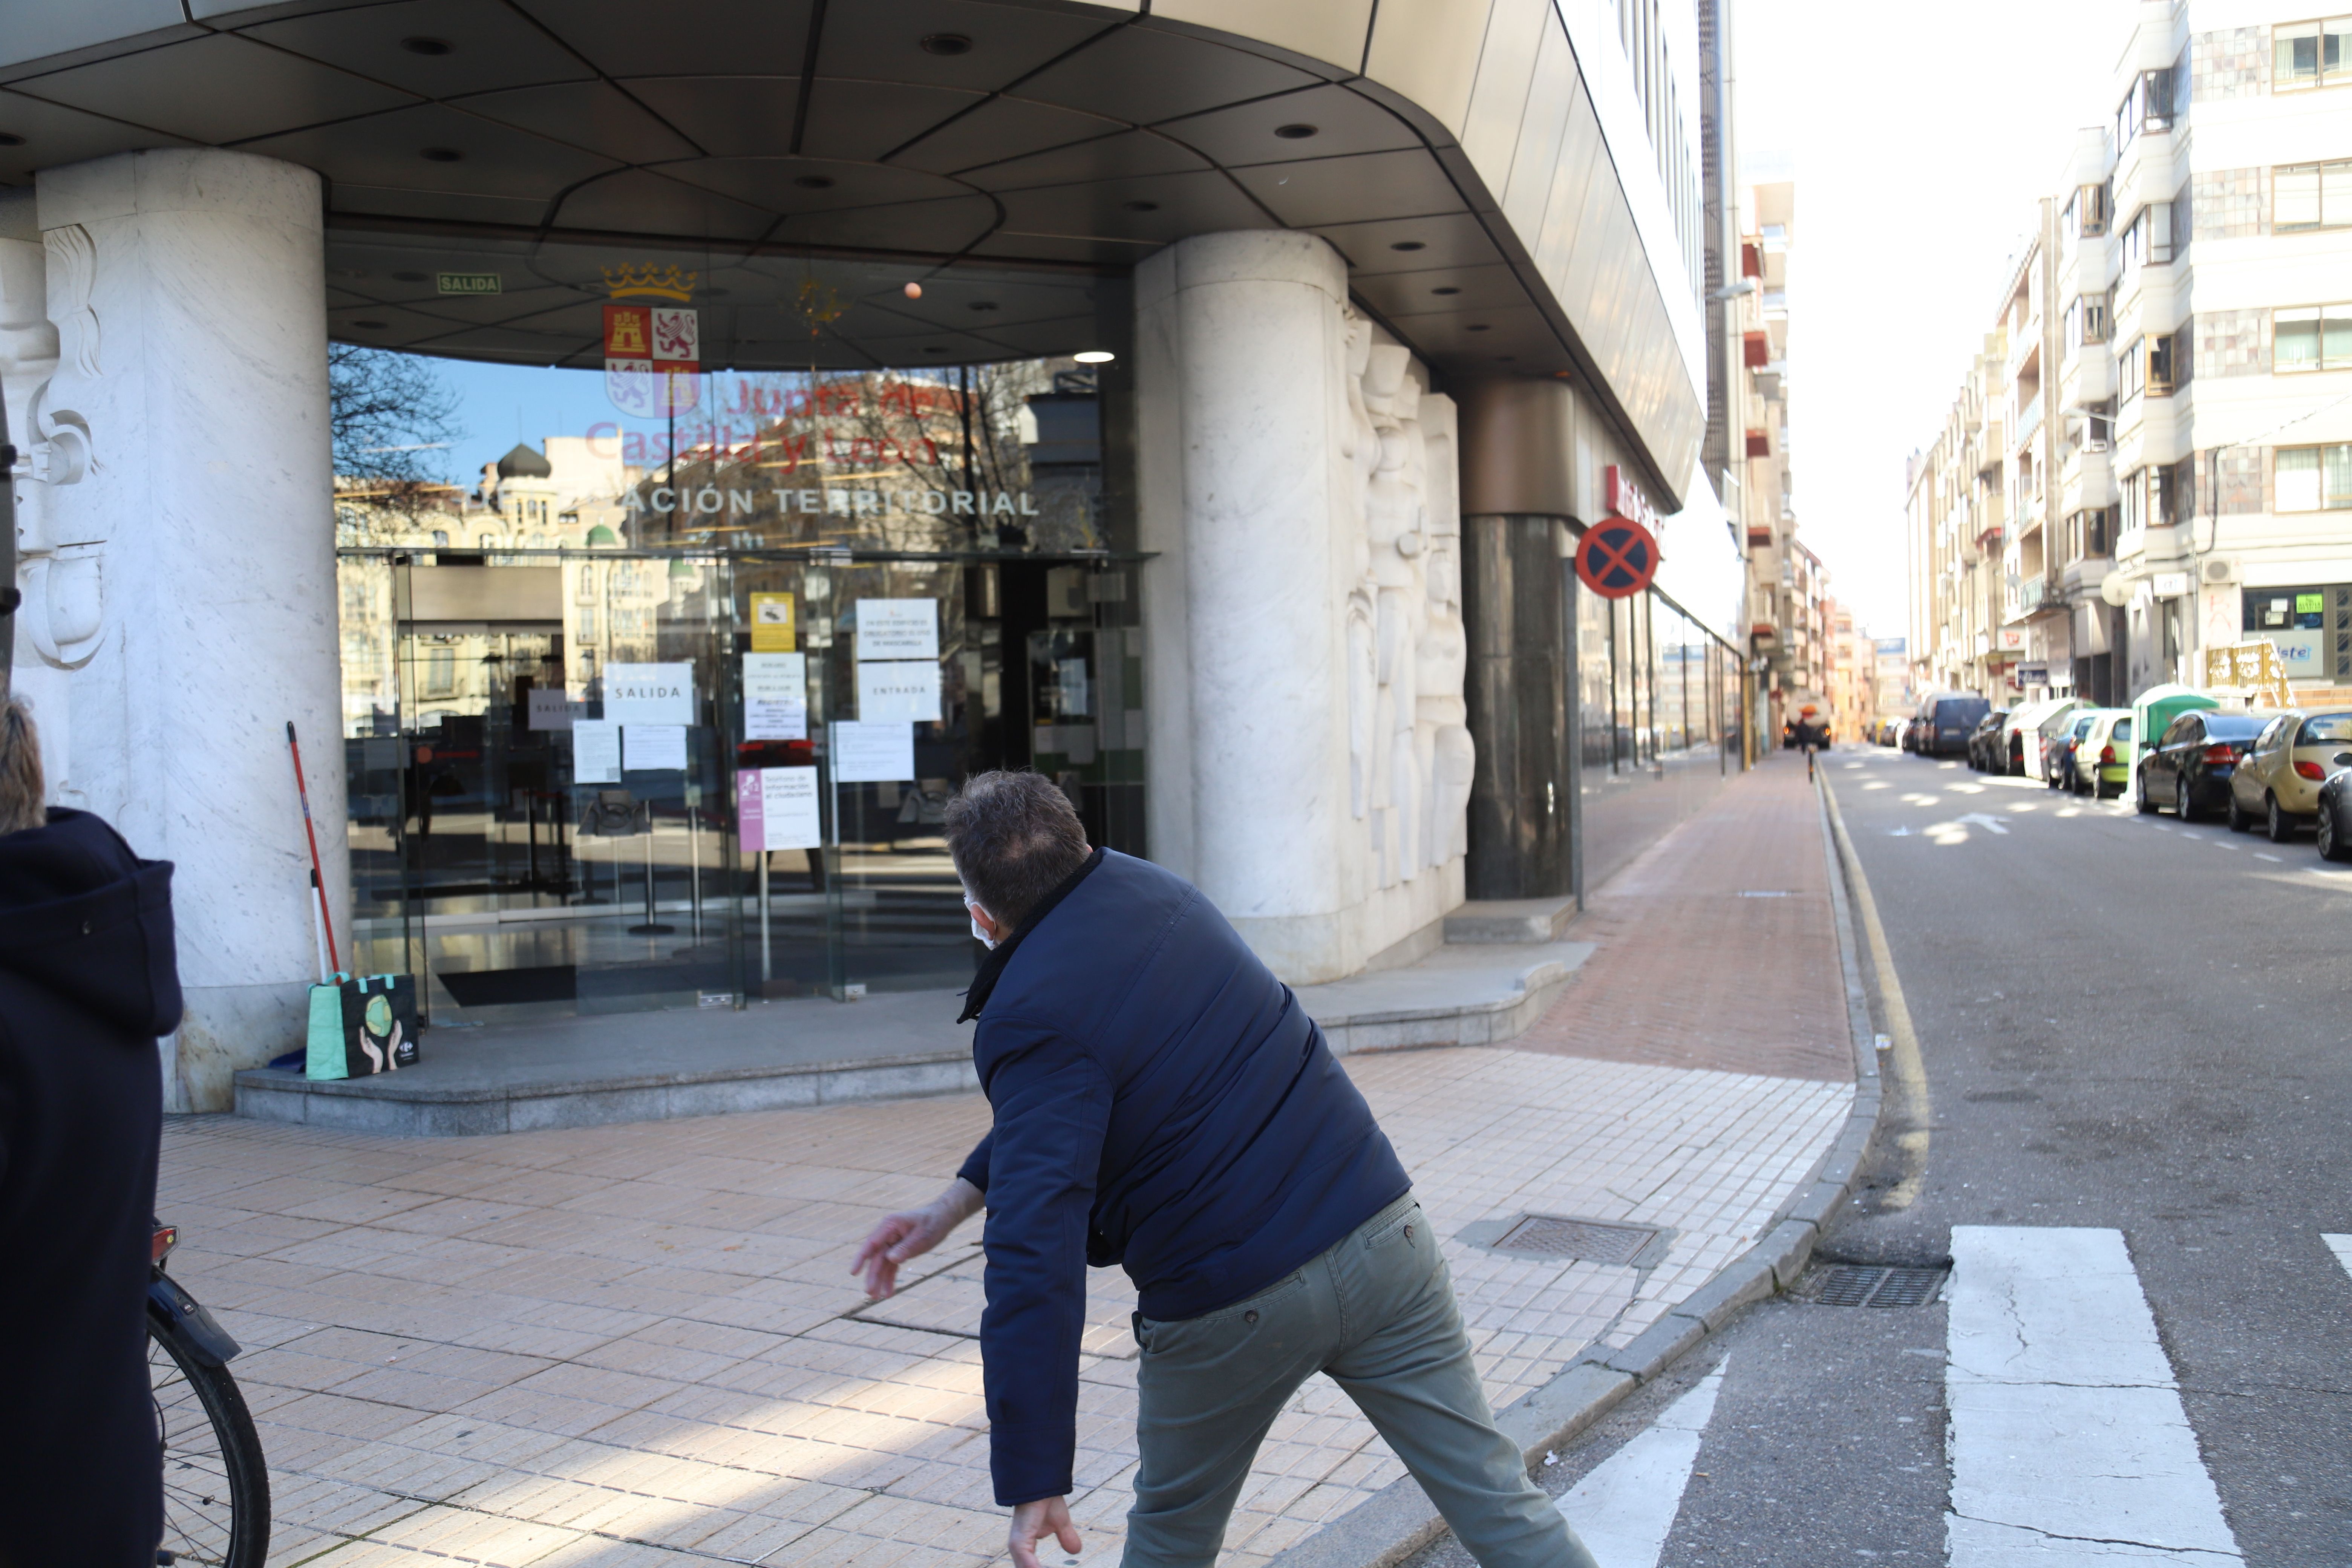 'A huevazo limpio' contra la delegación de la Junta en Zamora por las restricciones en la hostelería